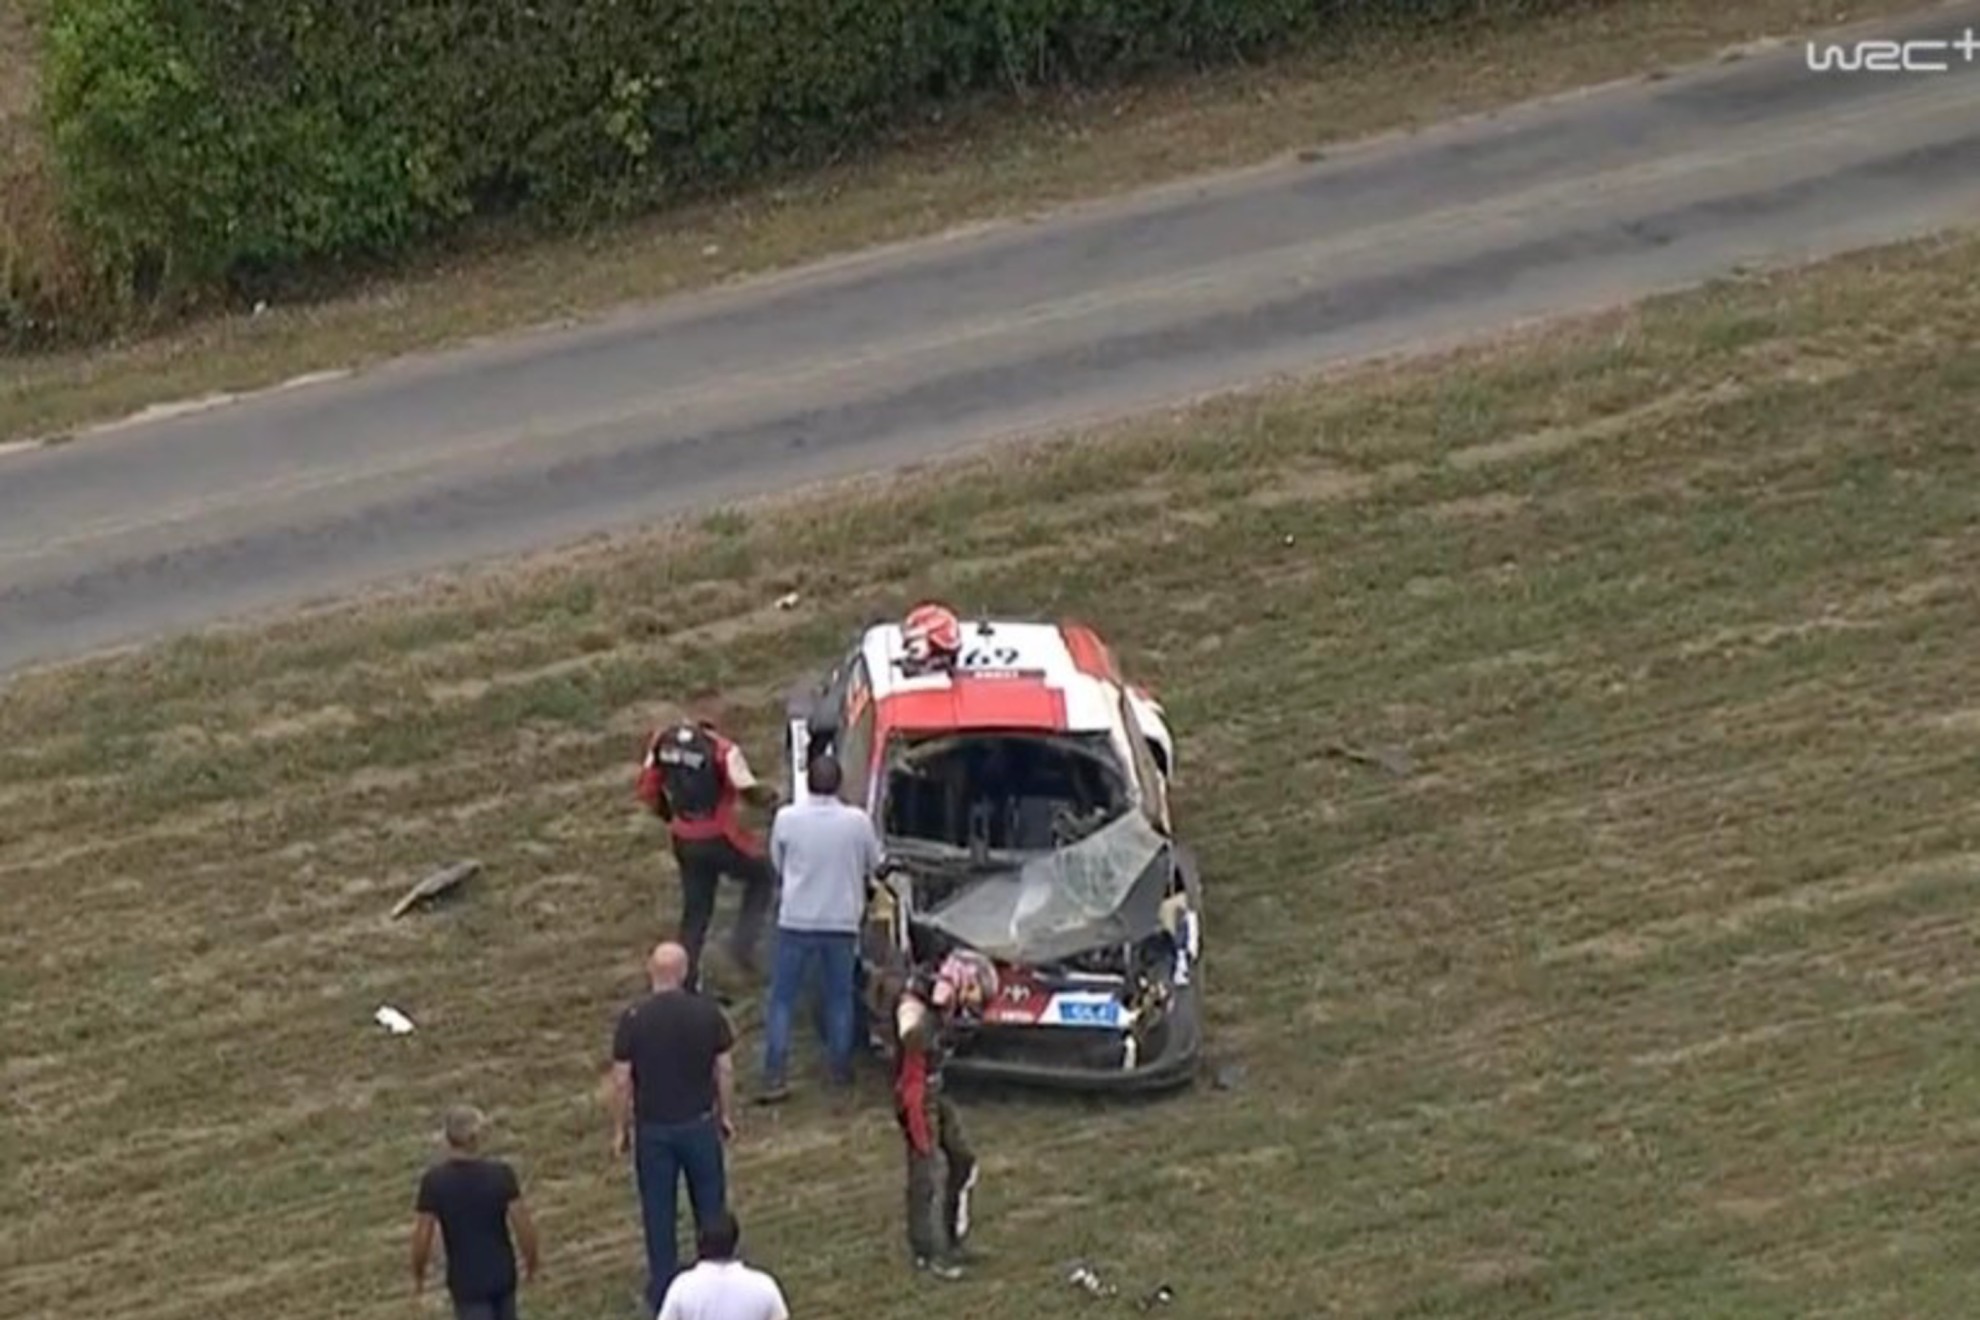 Rovanper, accidentado en el segundo tramo. Foto: WRC